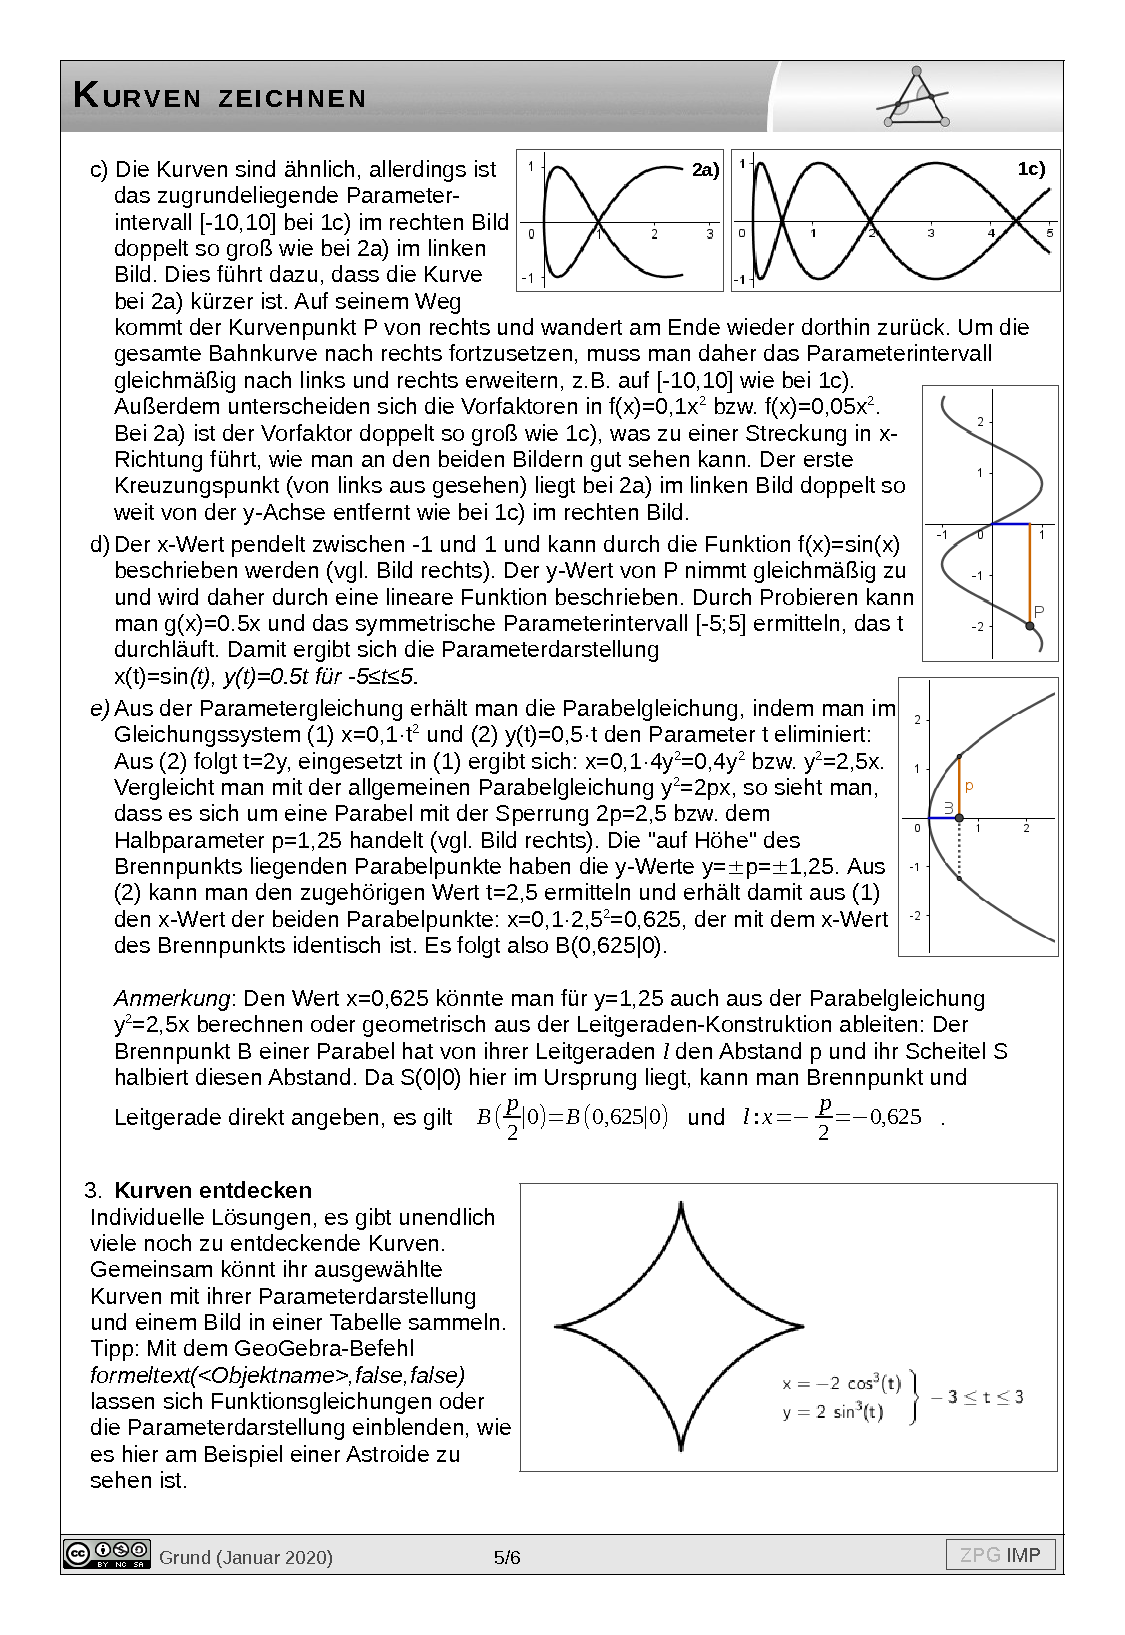 Kurven zeichnen: Lösung, Seite 5